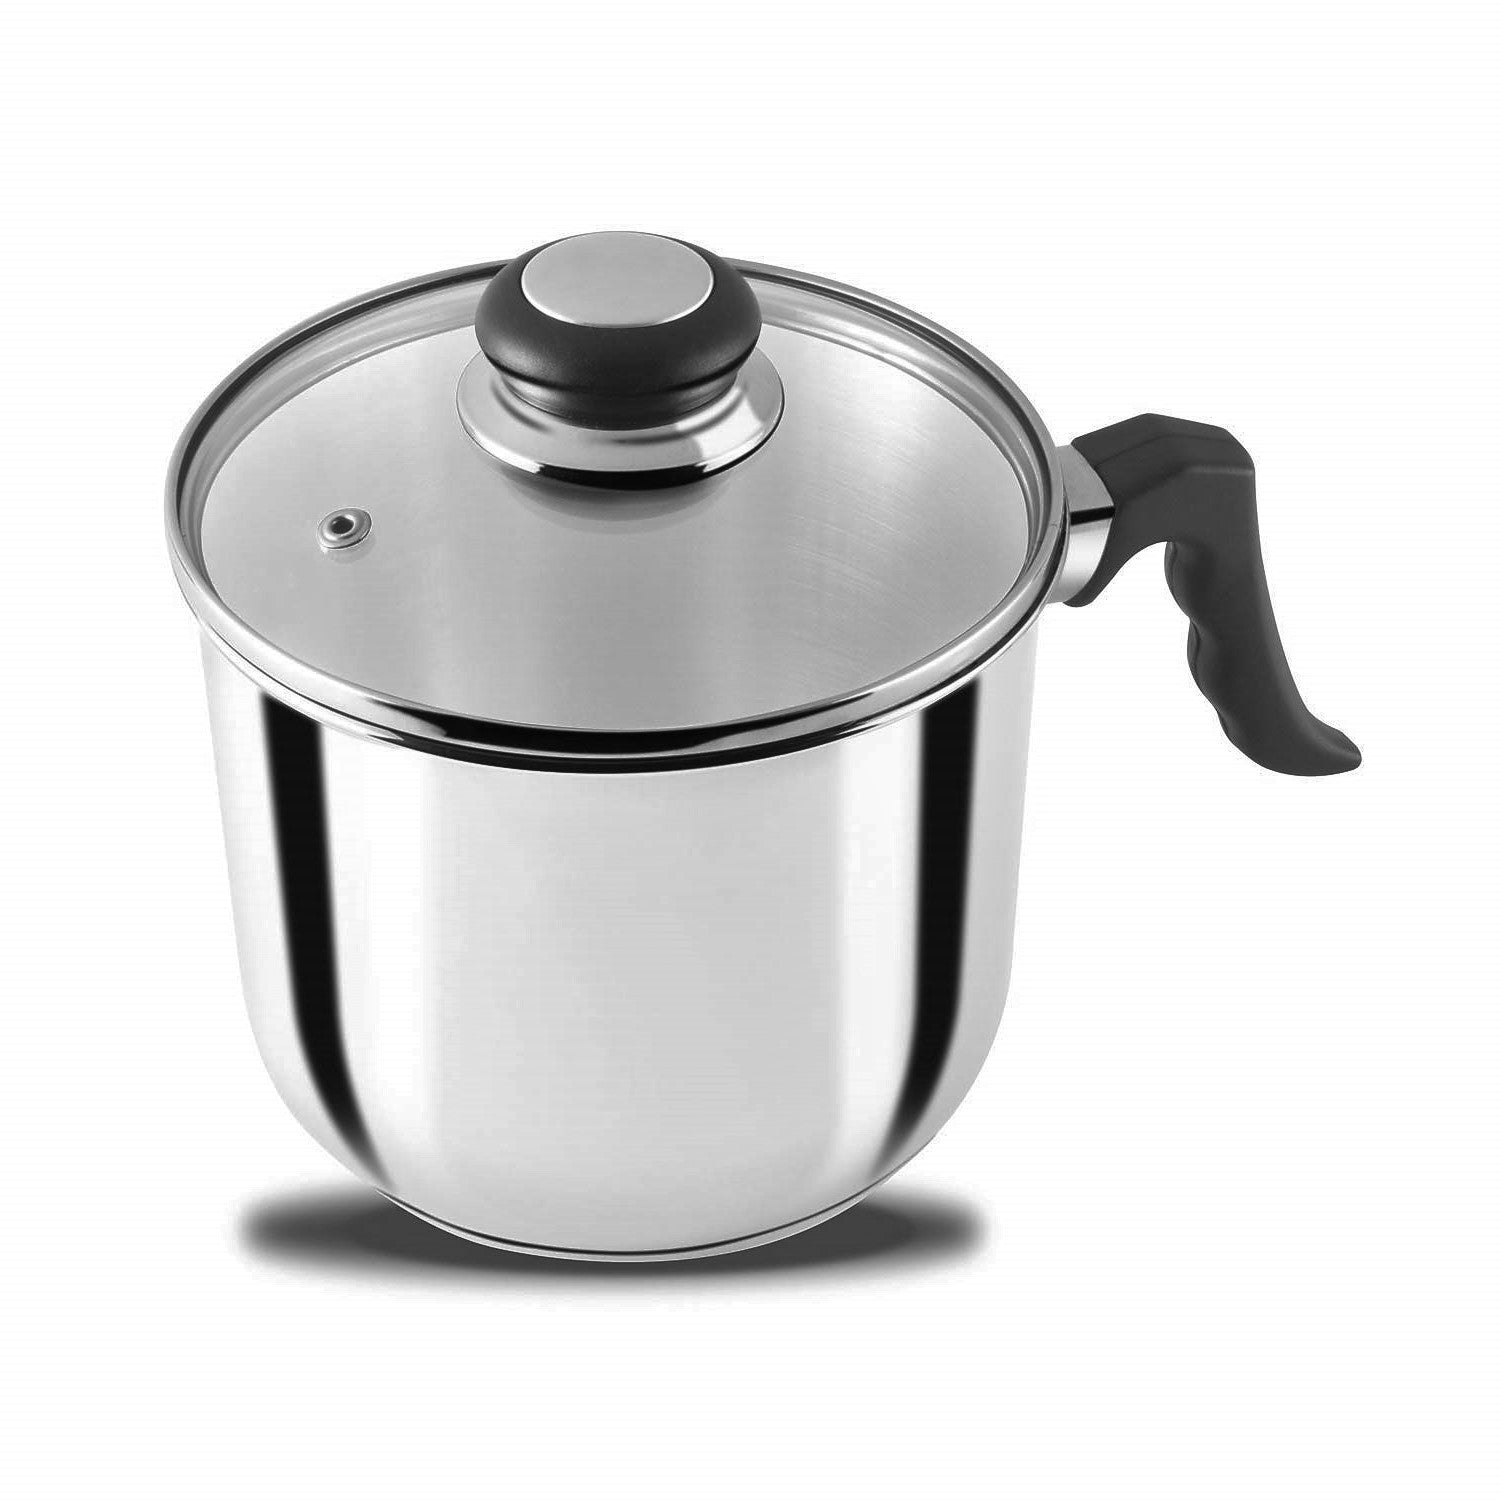 OKUMEYR Stainless Steel Milk Pot Milk Cooking Pot Deep Sauce Pan Pasta Pot  Small Cooking Pot Metal Soup Pot Cheese Boiler Pot Noodles Pot Saucepan Pot